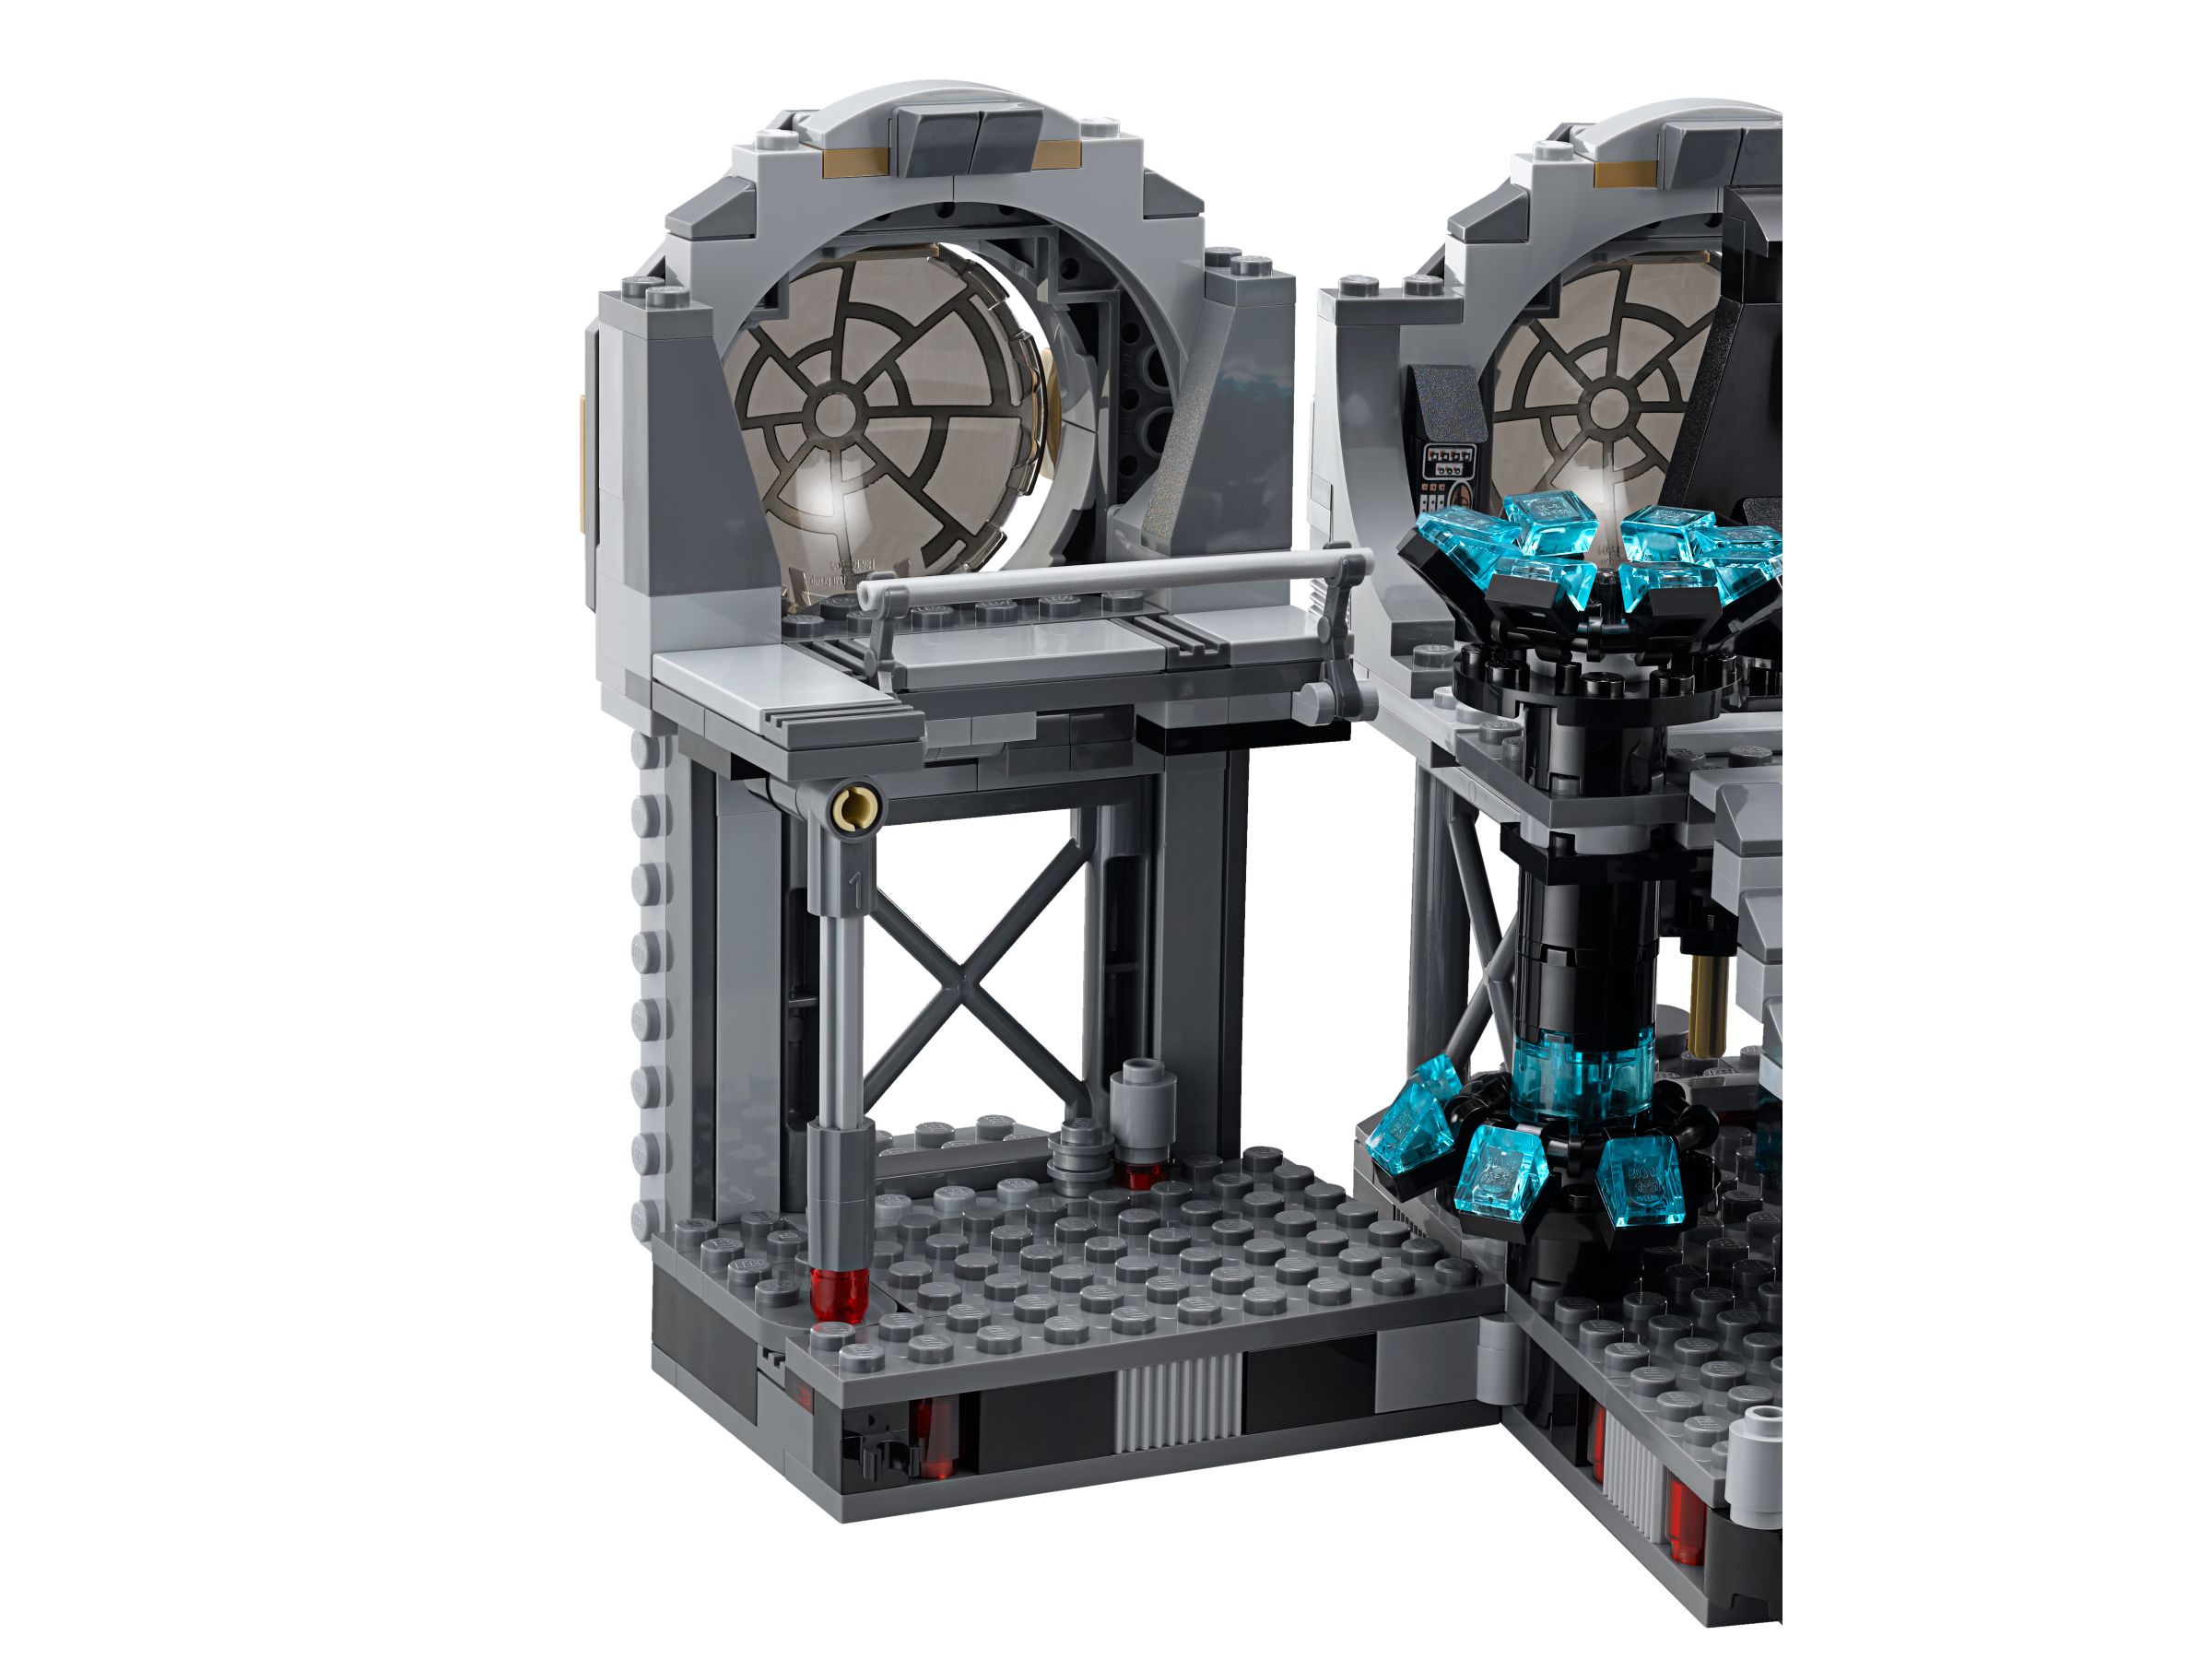 LEGO Star Wars 75093 Death Star™ Final Duel LEGO_75093_alt4.jpg